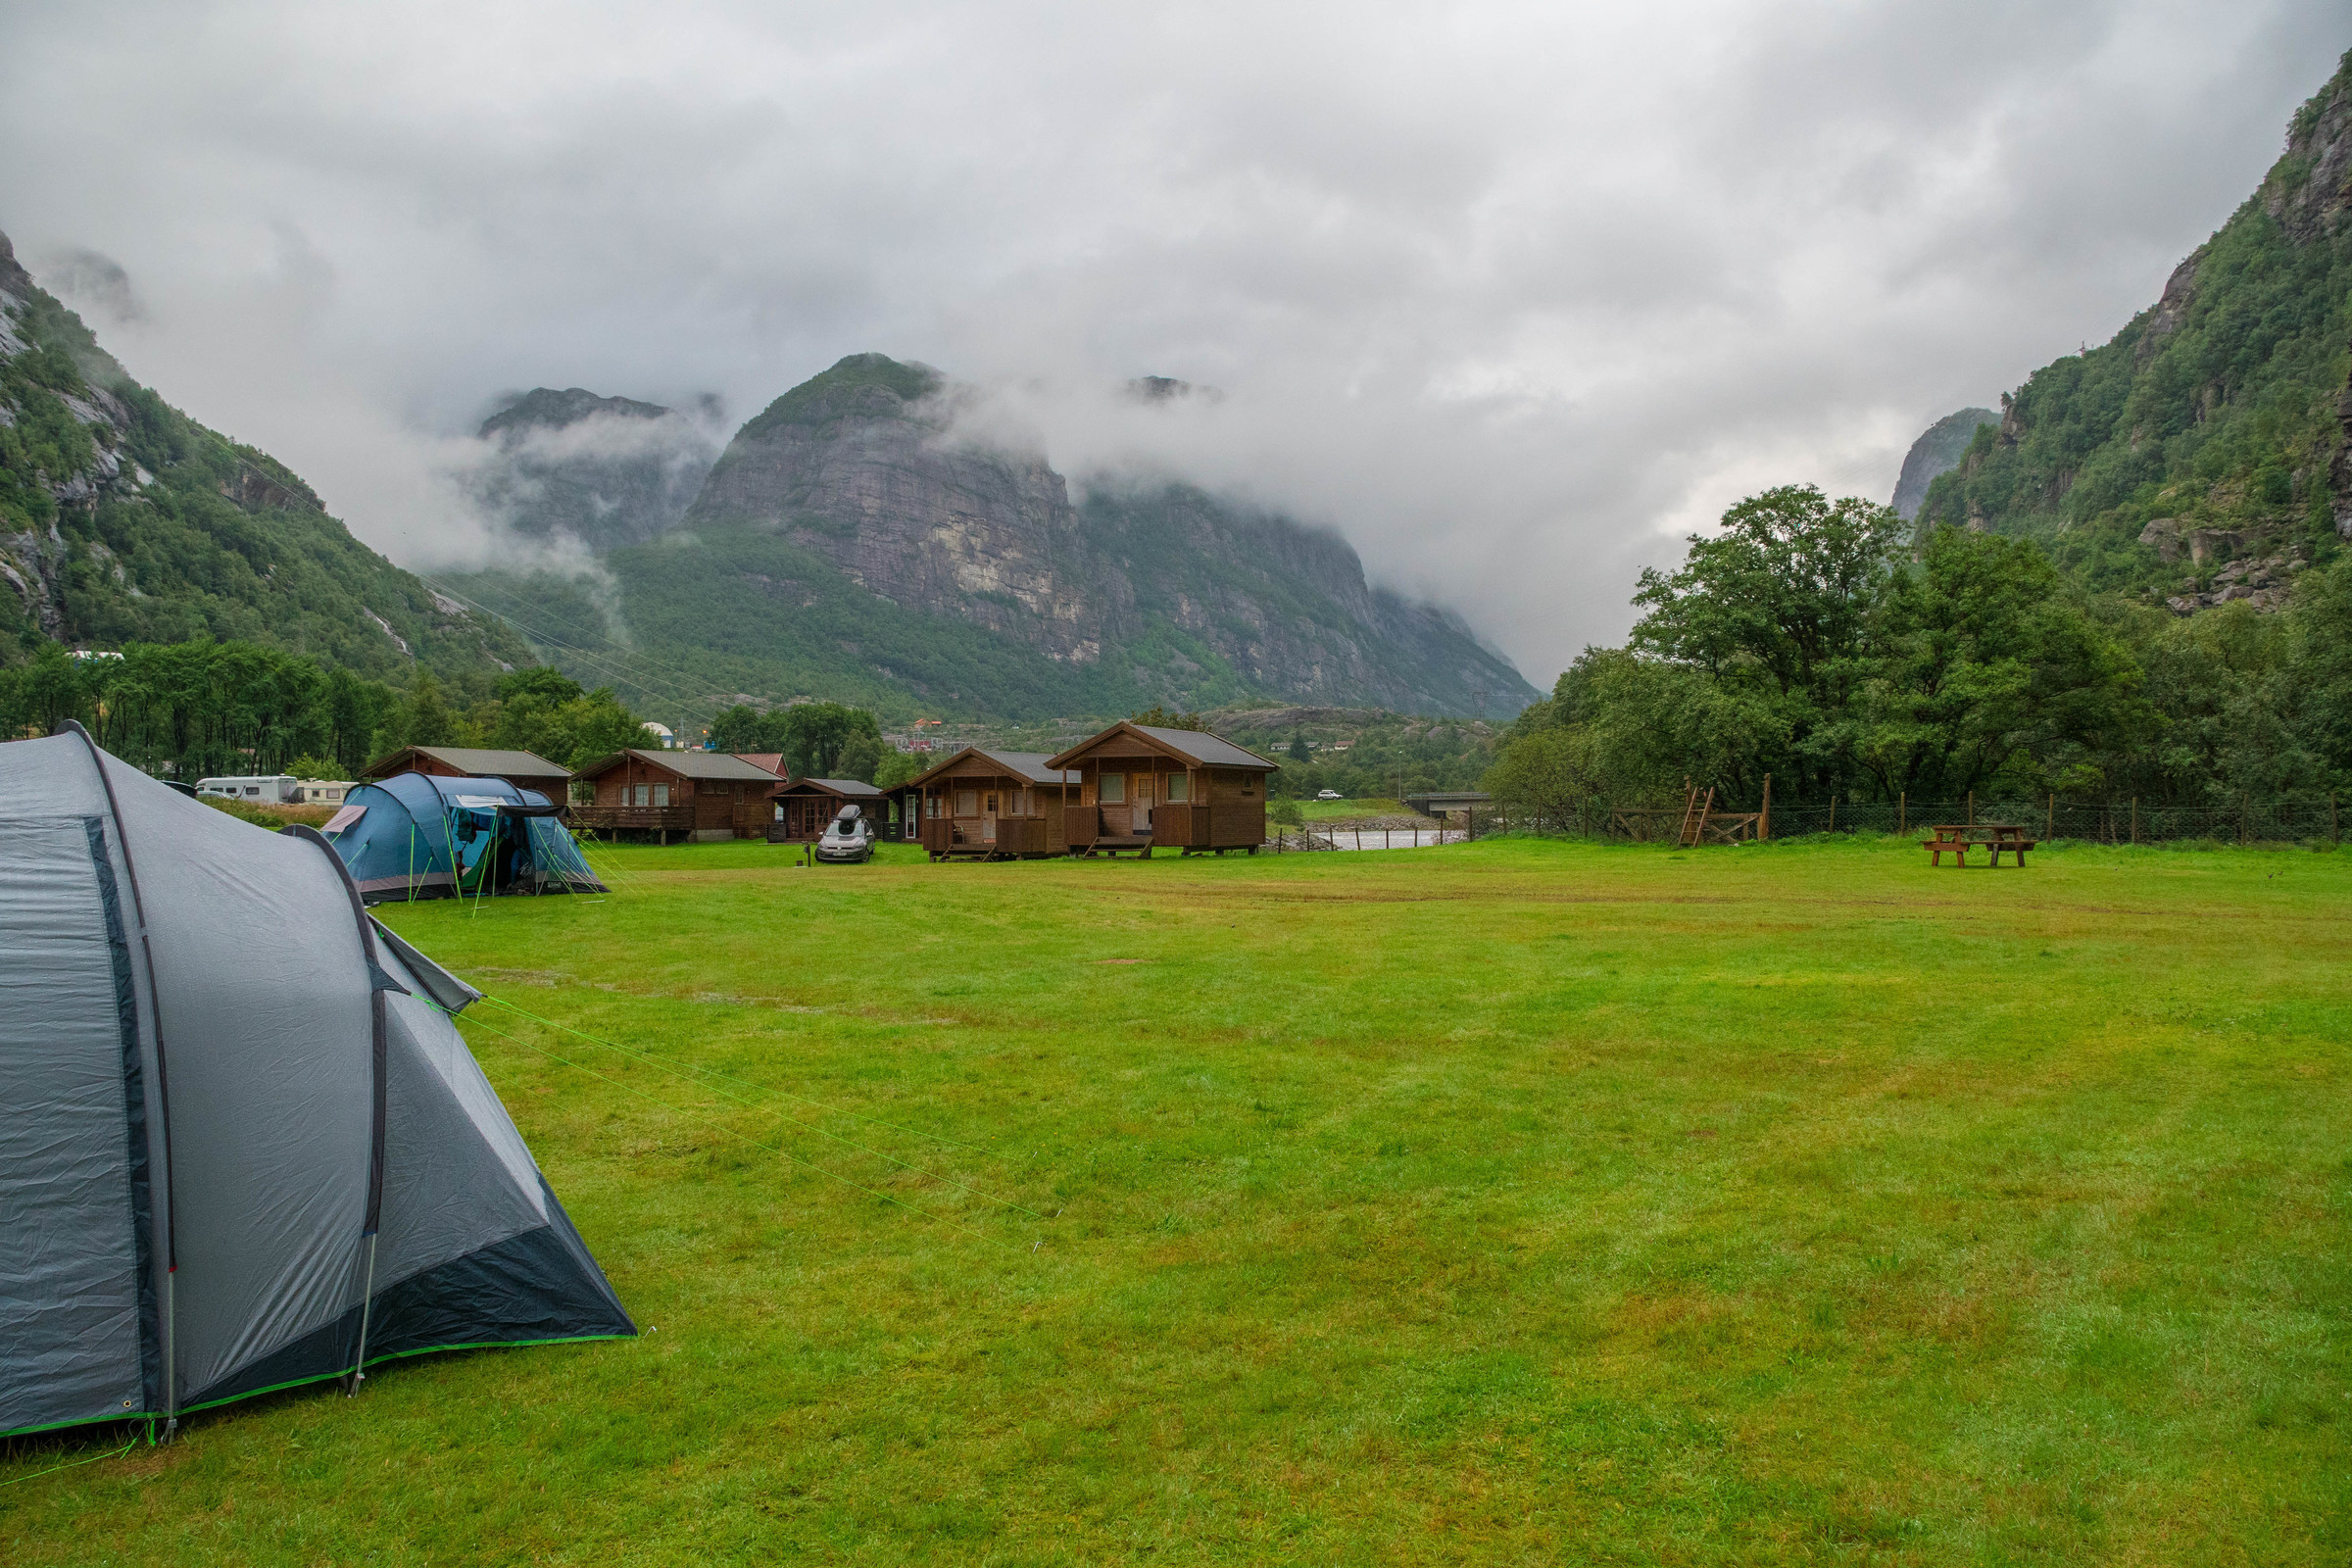 Camping site. Кепинг в Норвегии. Лагерь в Норвегии Camp Norway. Автокемпинг Норвегия. Палаточный лагерь в горах.